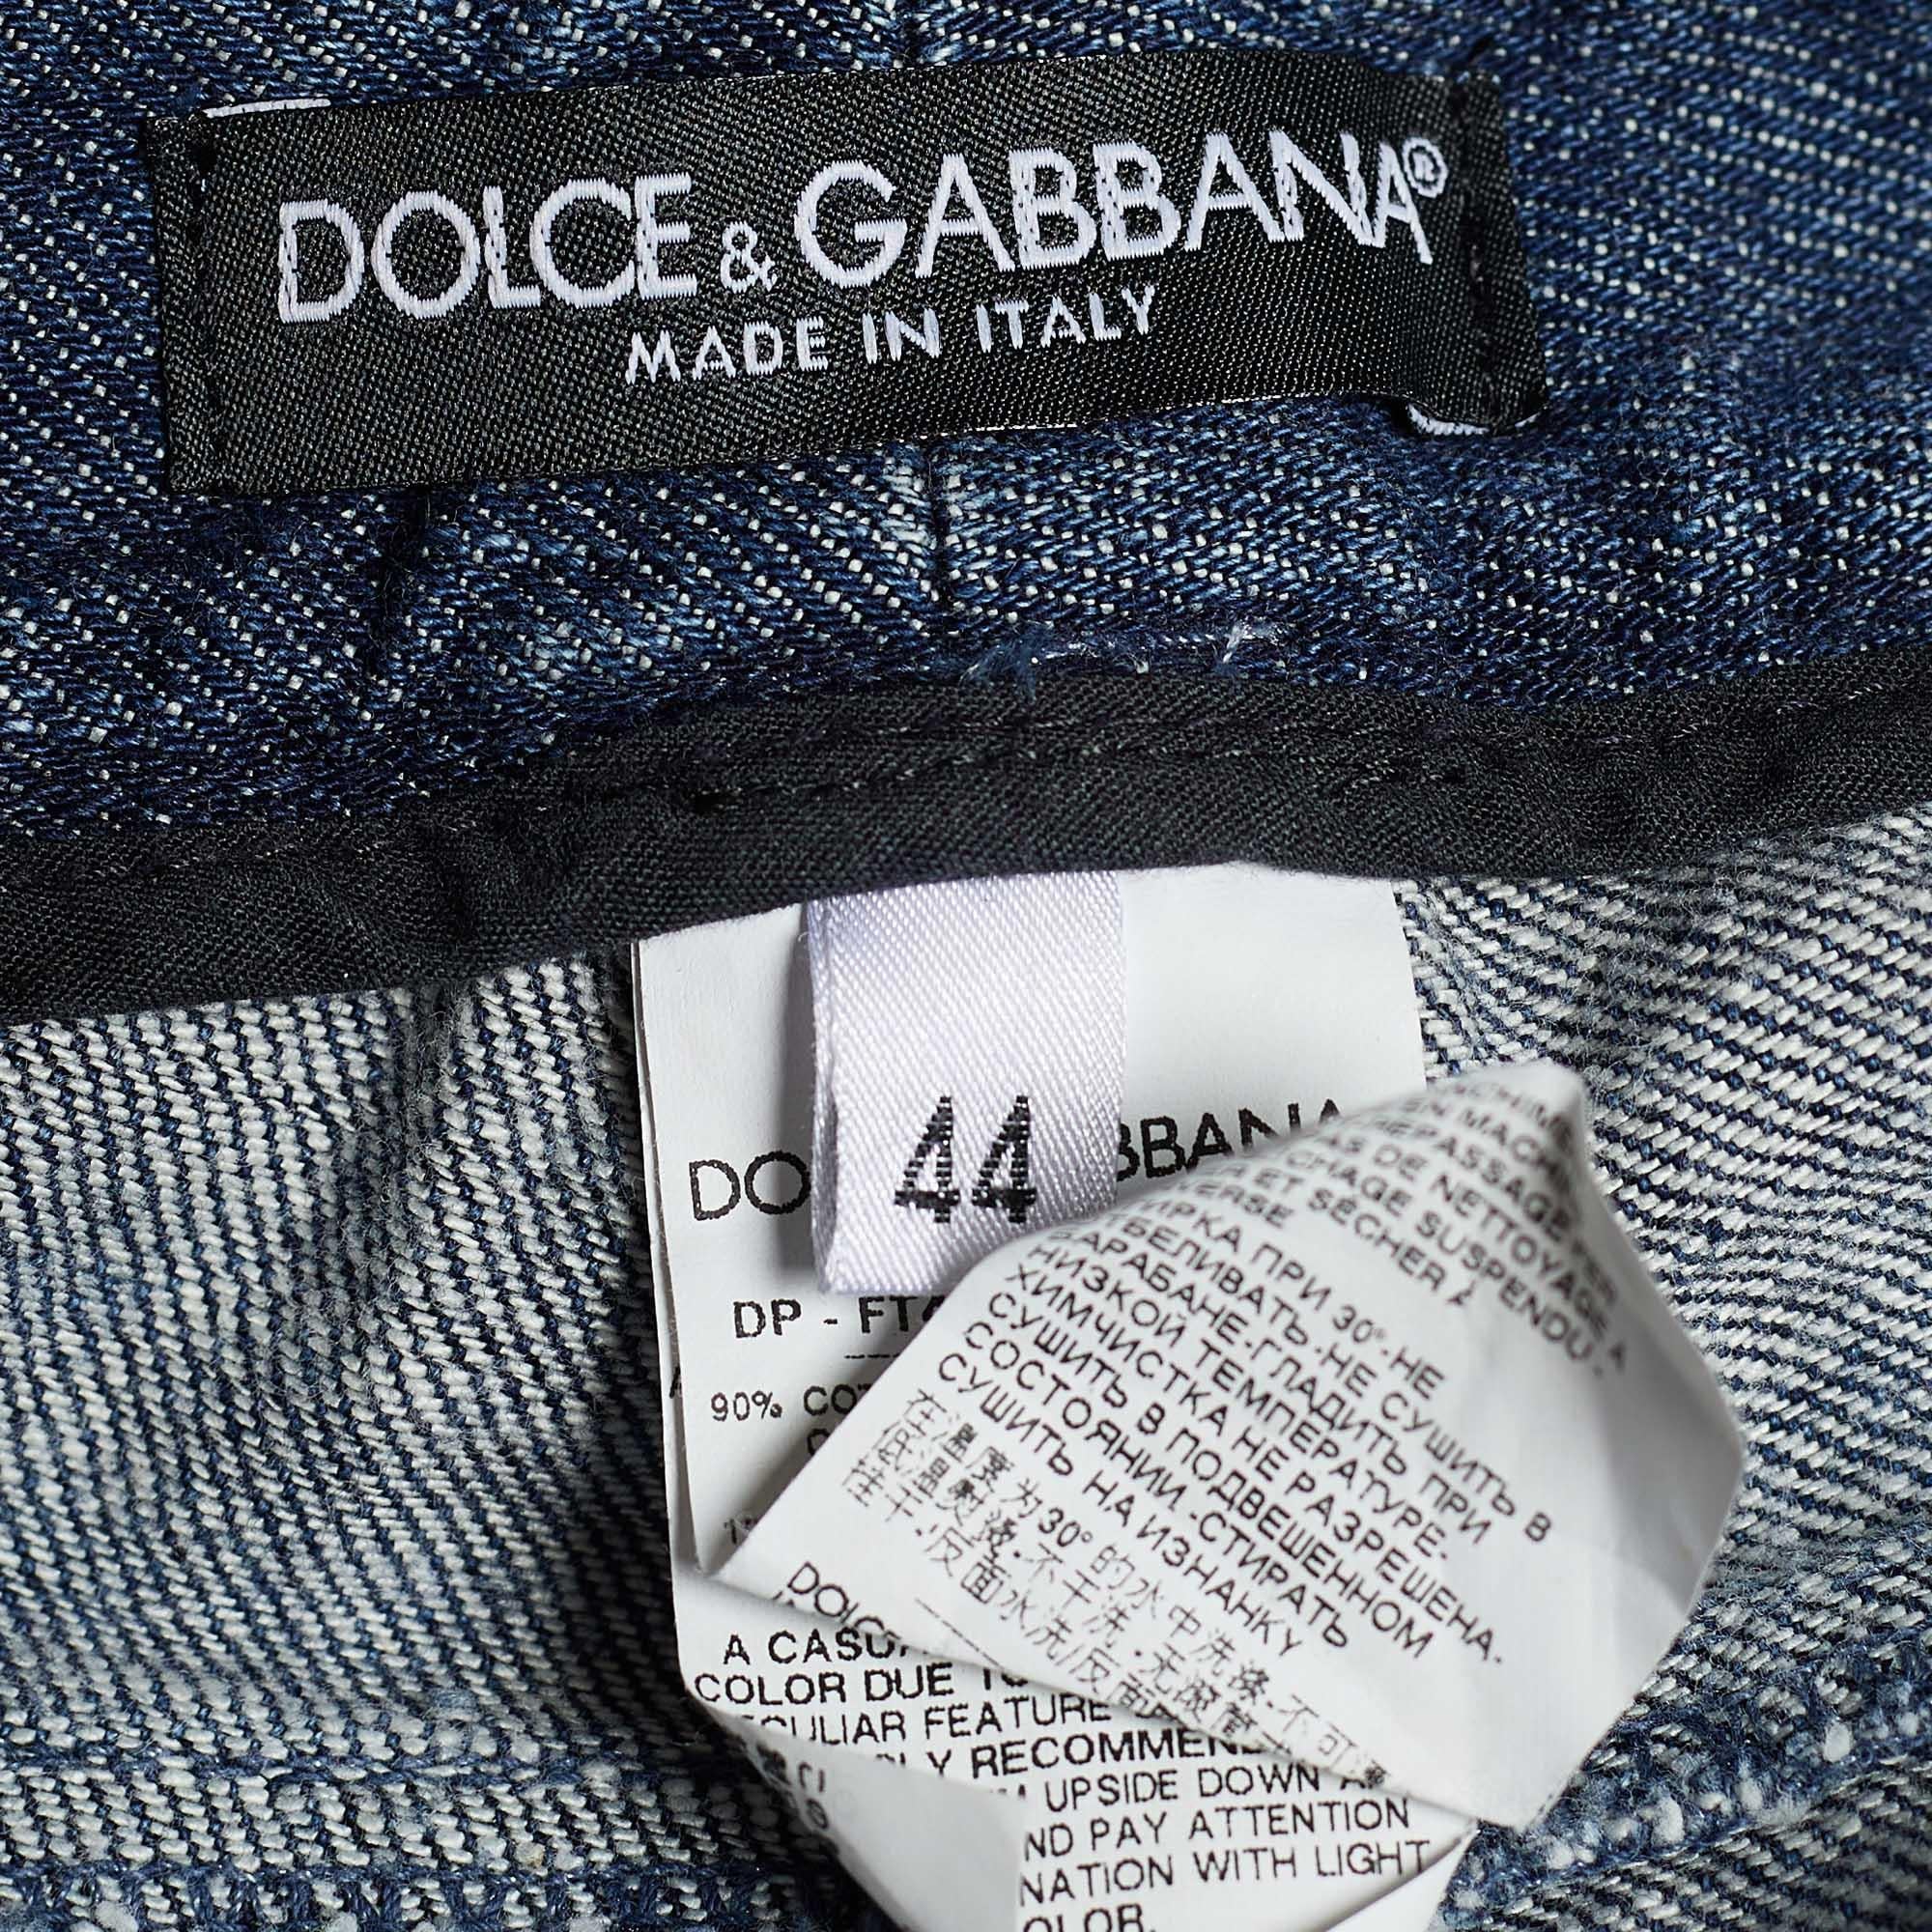 Dolce & Gabbana - Jean délavé en jean embelli, effet délavé, indigo, taille 32 po. 2